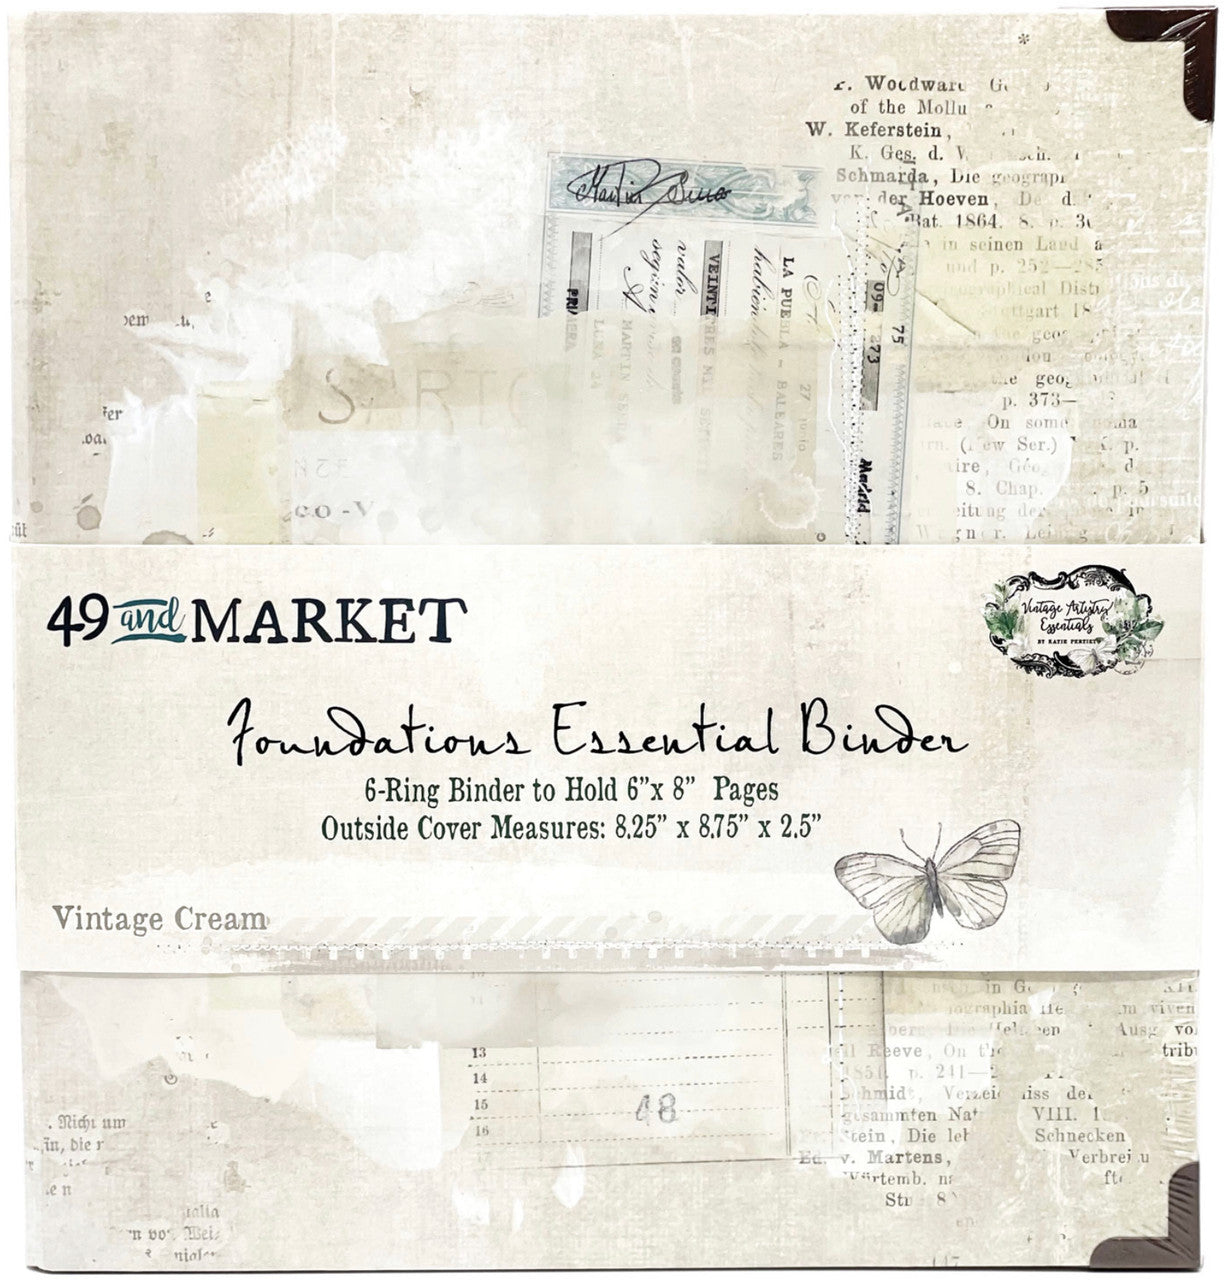 Carpeta esencial 49 &amp; Market Foundations - Crema vintage